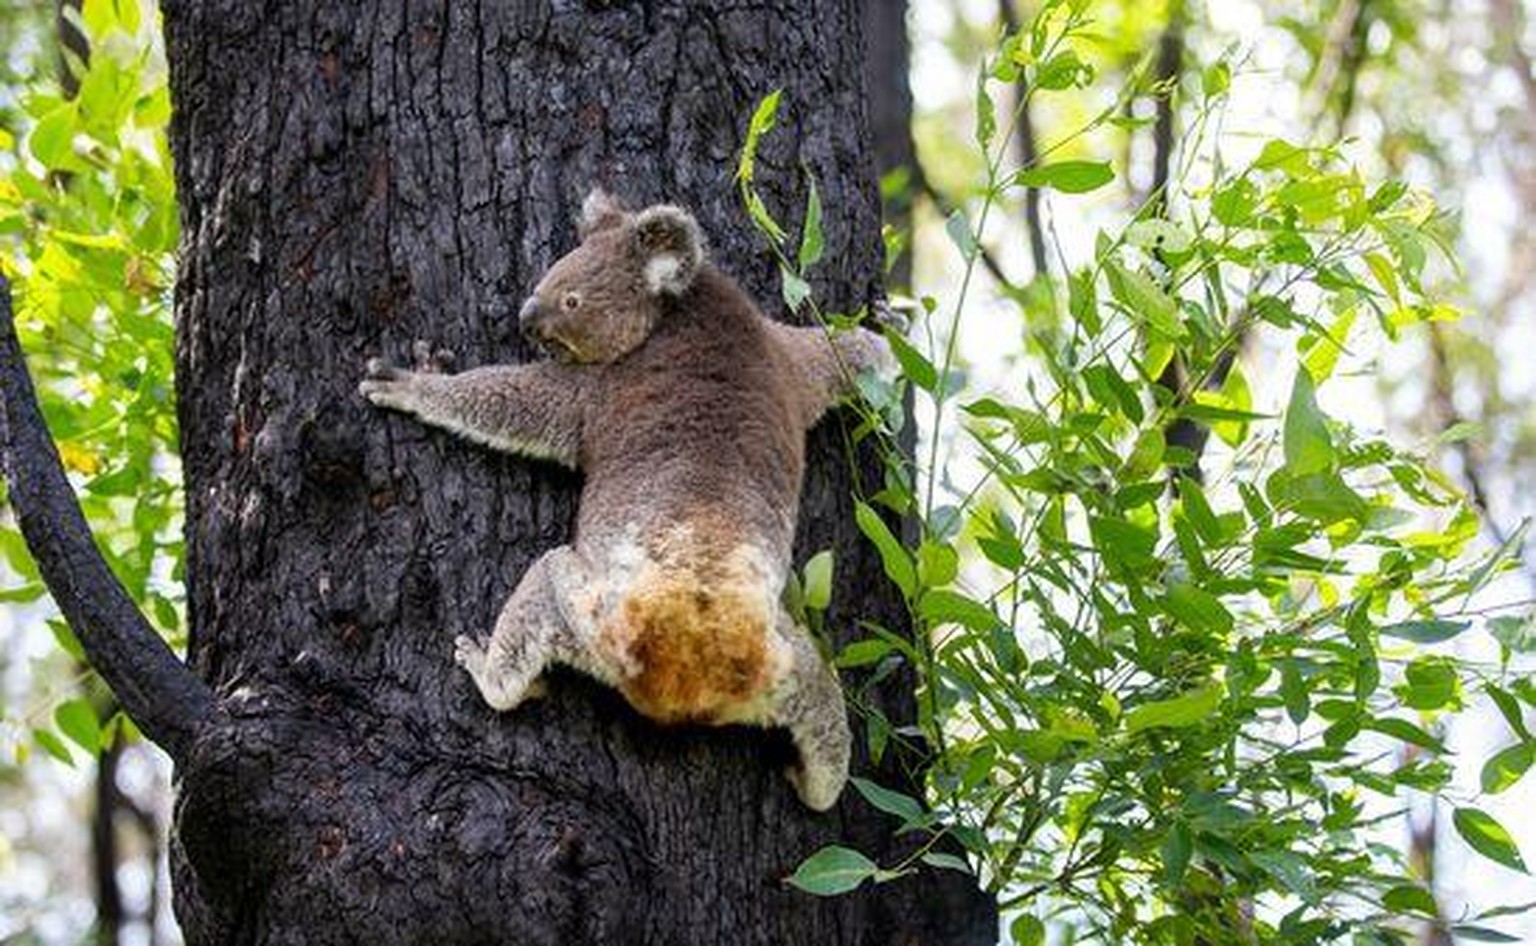 Koala-Weibchen Anwen hat sich von ihren Brandverletzungen erholt und ist wieder in Freiheit.